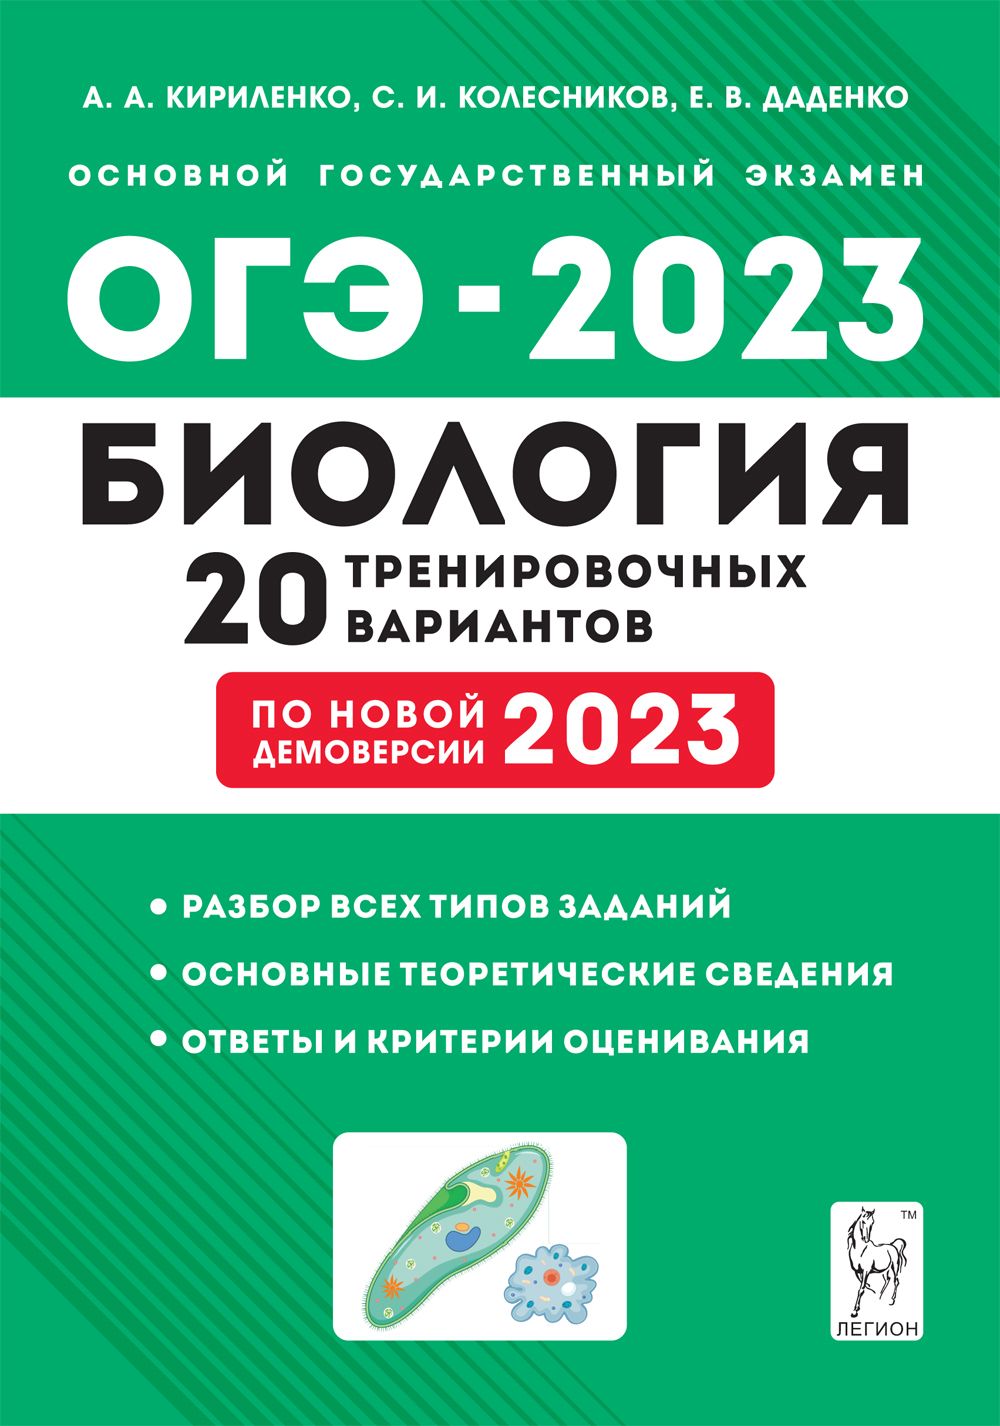 ОГЭ-2023. Биология. 20 тренировочных вариантов по демоверсии 2021 г.